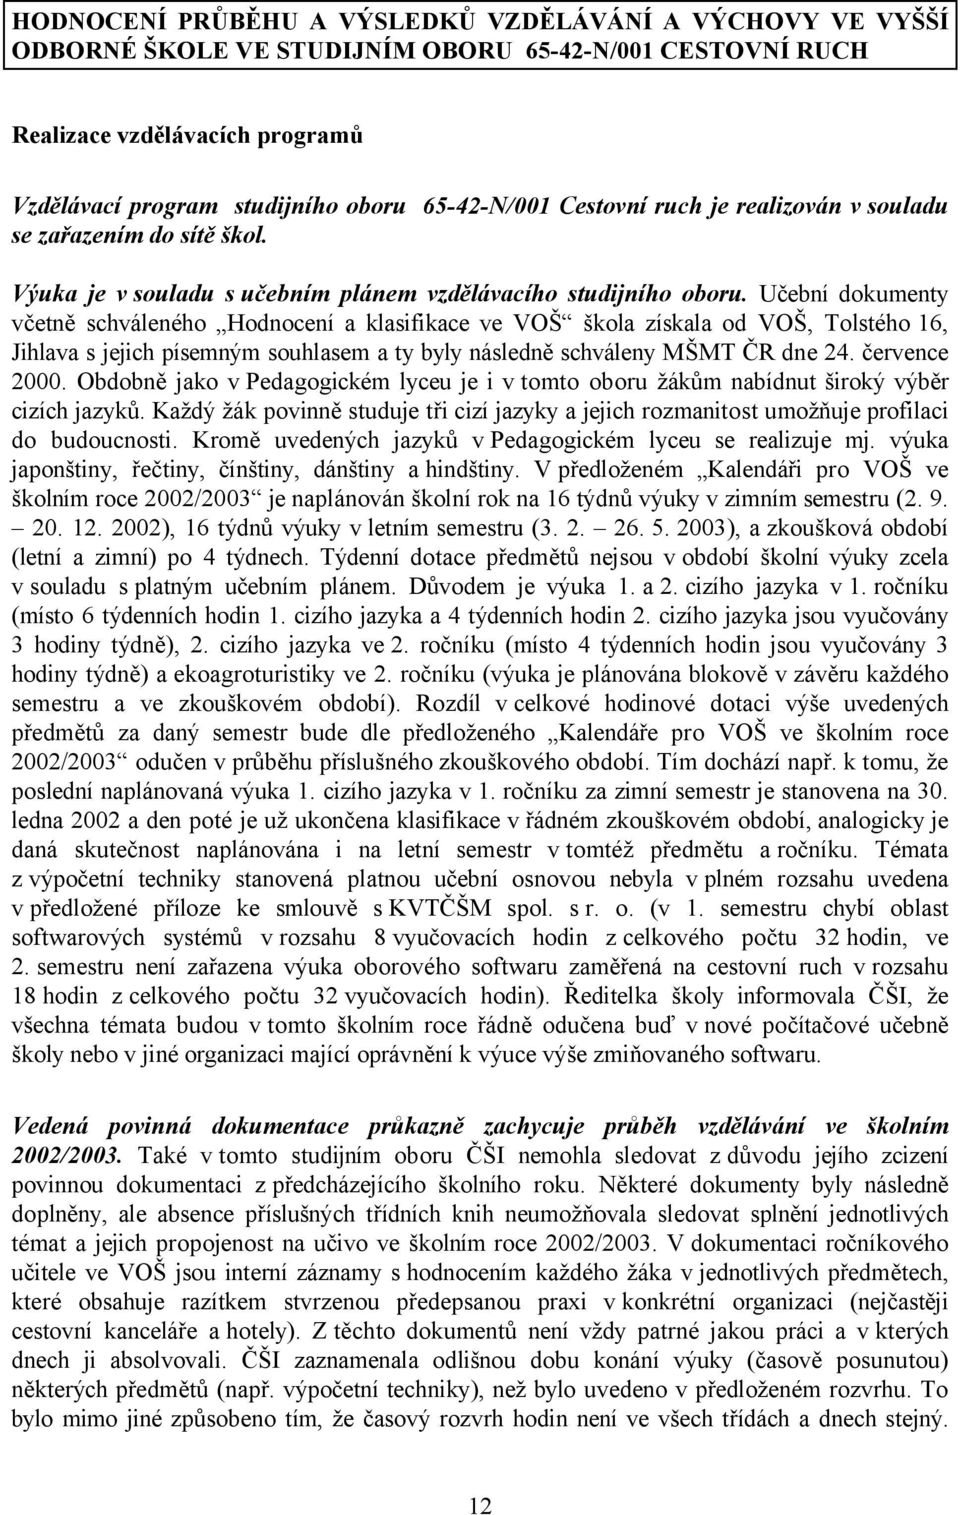 Učební dokumenty včetně schváleného Hodnocení a klasifikace ve VOŠ škola získala od VOŠ, Tolstého 16, Jihlava s jejich písemným souhlasem a ty byly následně schváleny MŠMT ČR dne 24. července 2000.